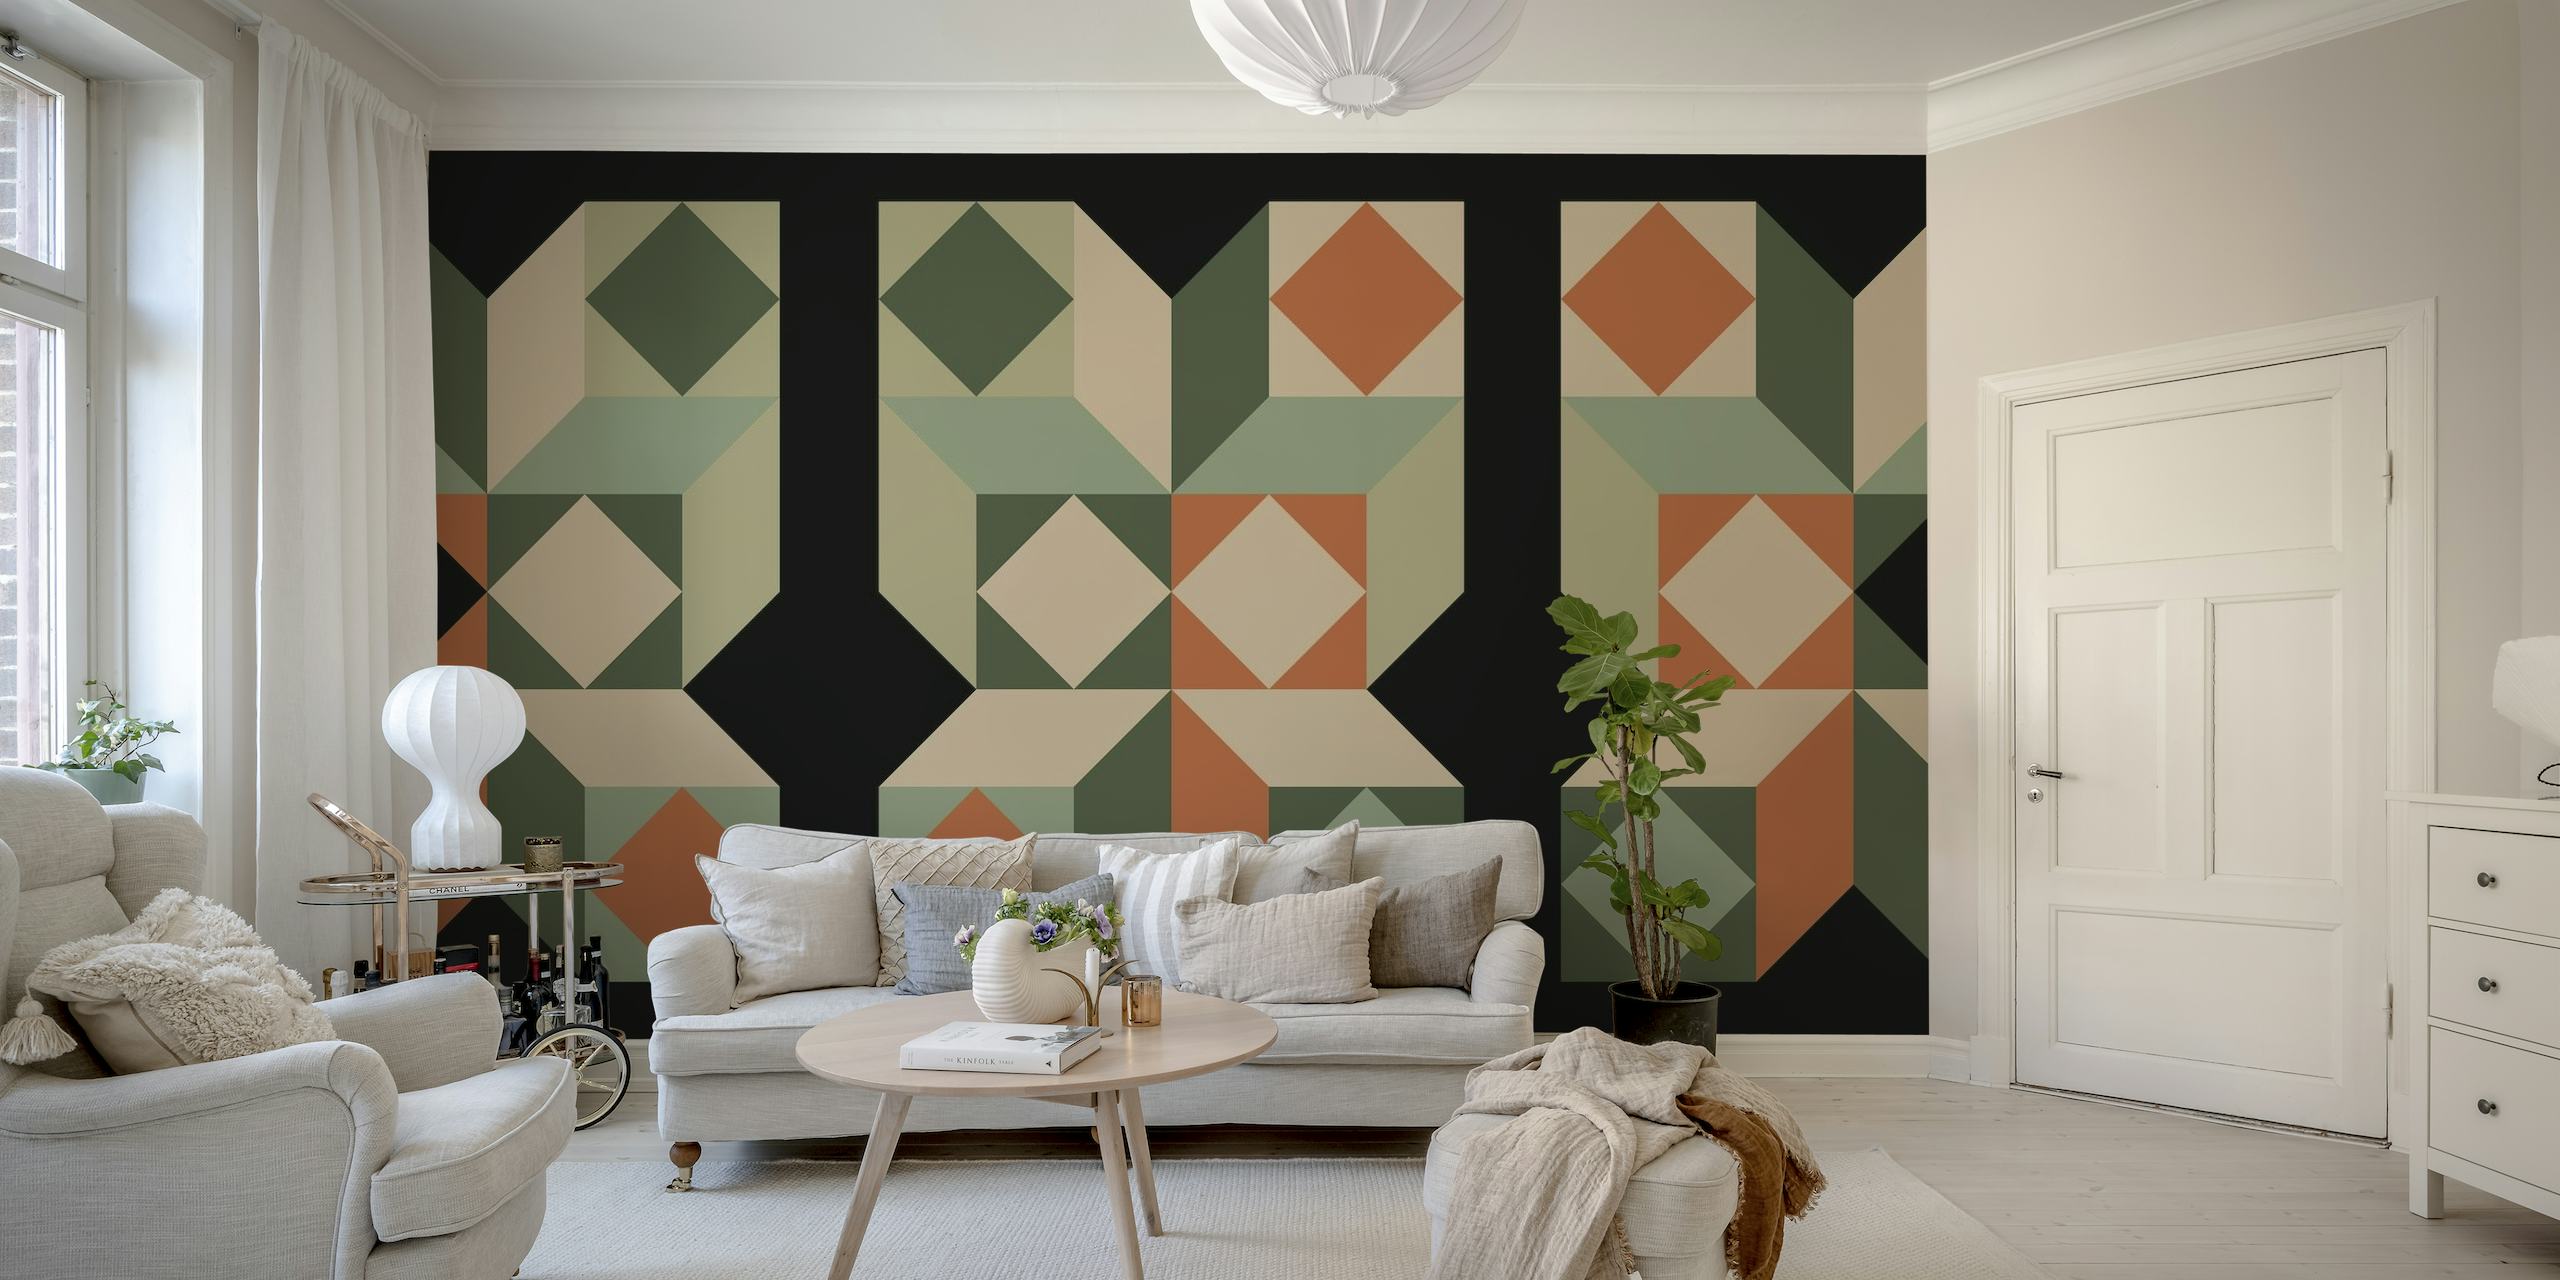 Zidna slika inspirirana Bauhausom sredinom stoljeća s geometrijskim uzorcima u zelenim, narančastim i neutralnim tonovima.